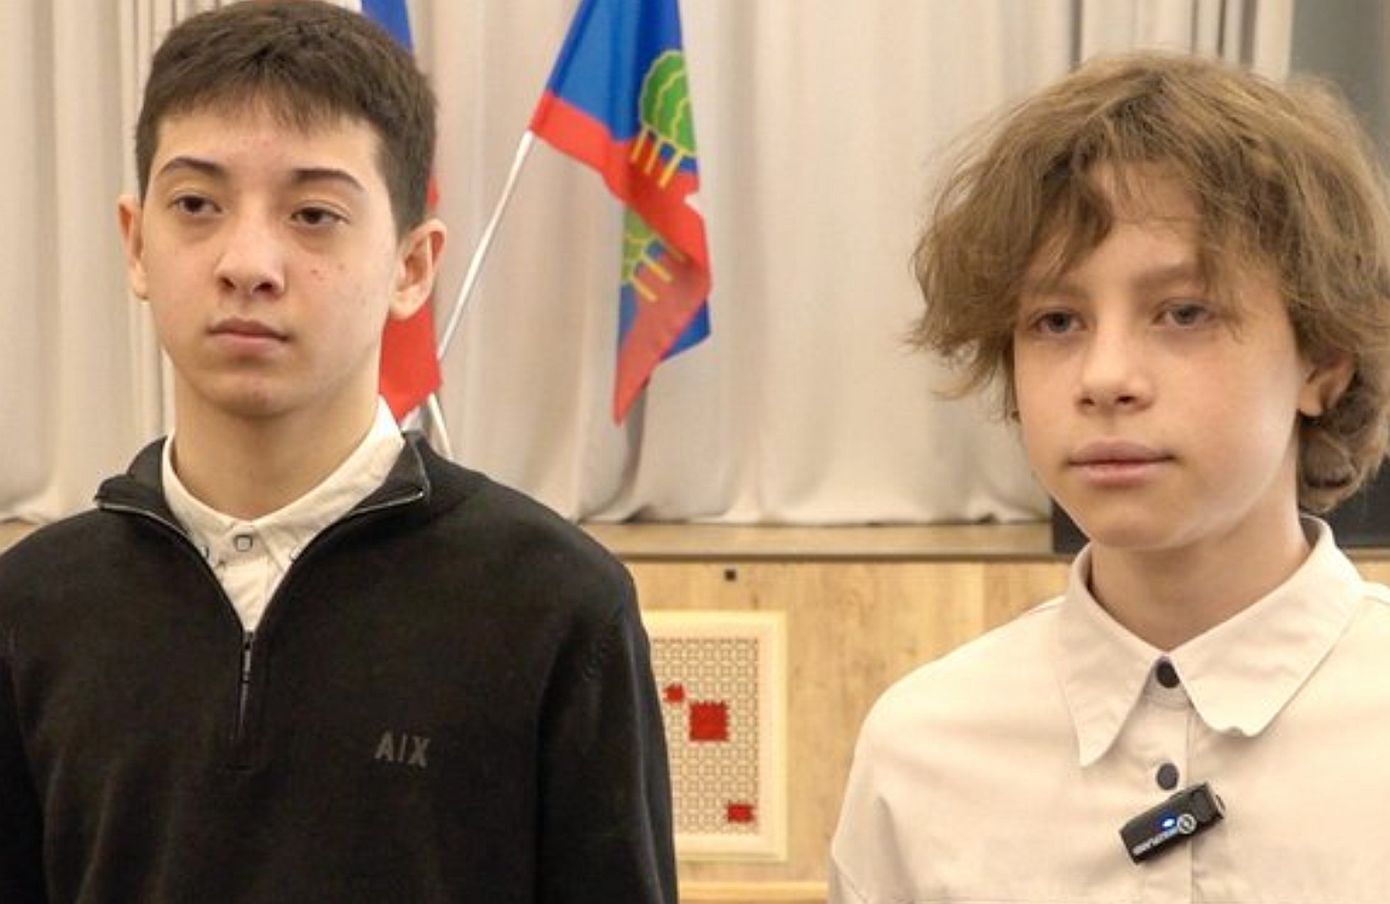 Εθνικοί ήρωες οι δυο έφηβοι που έσωσαν δεκάδες ανθρώπους στον συναυλιακό χώρο στη Μόσχα &#8211; Βραβεύτηκαν από το σχολείο τους